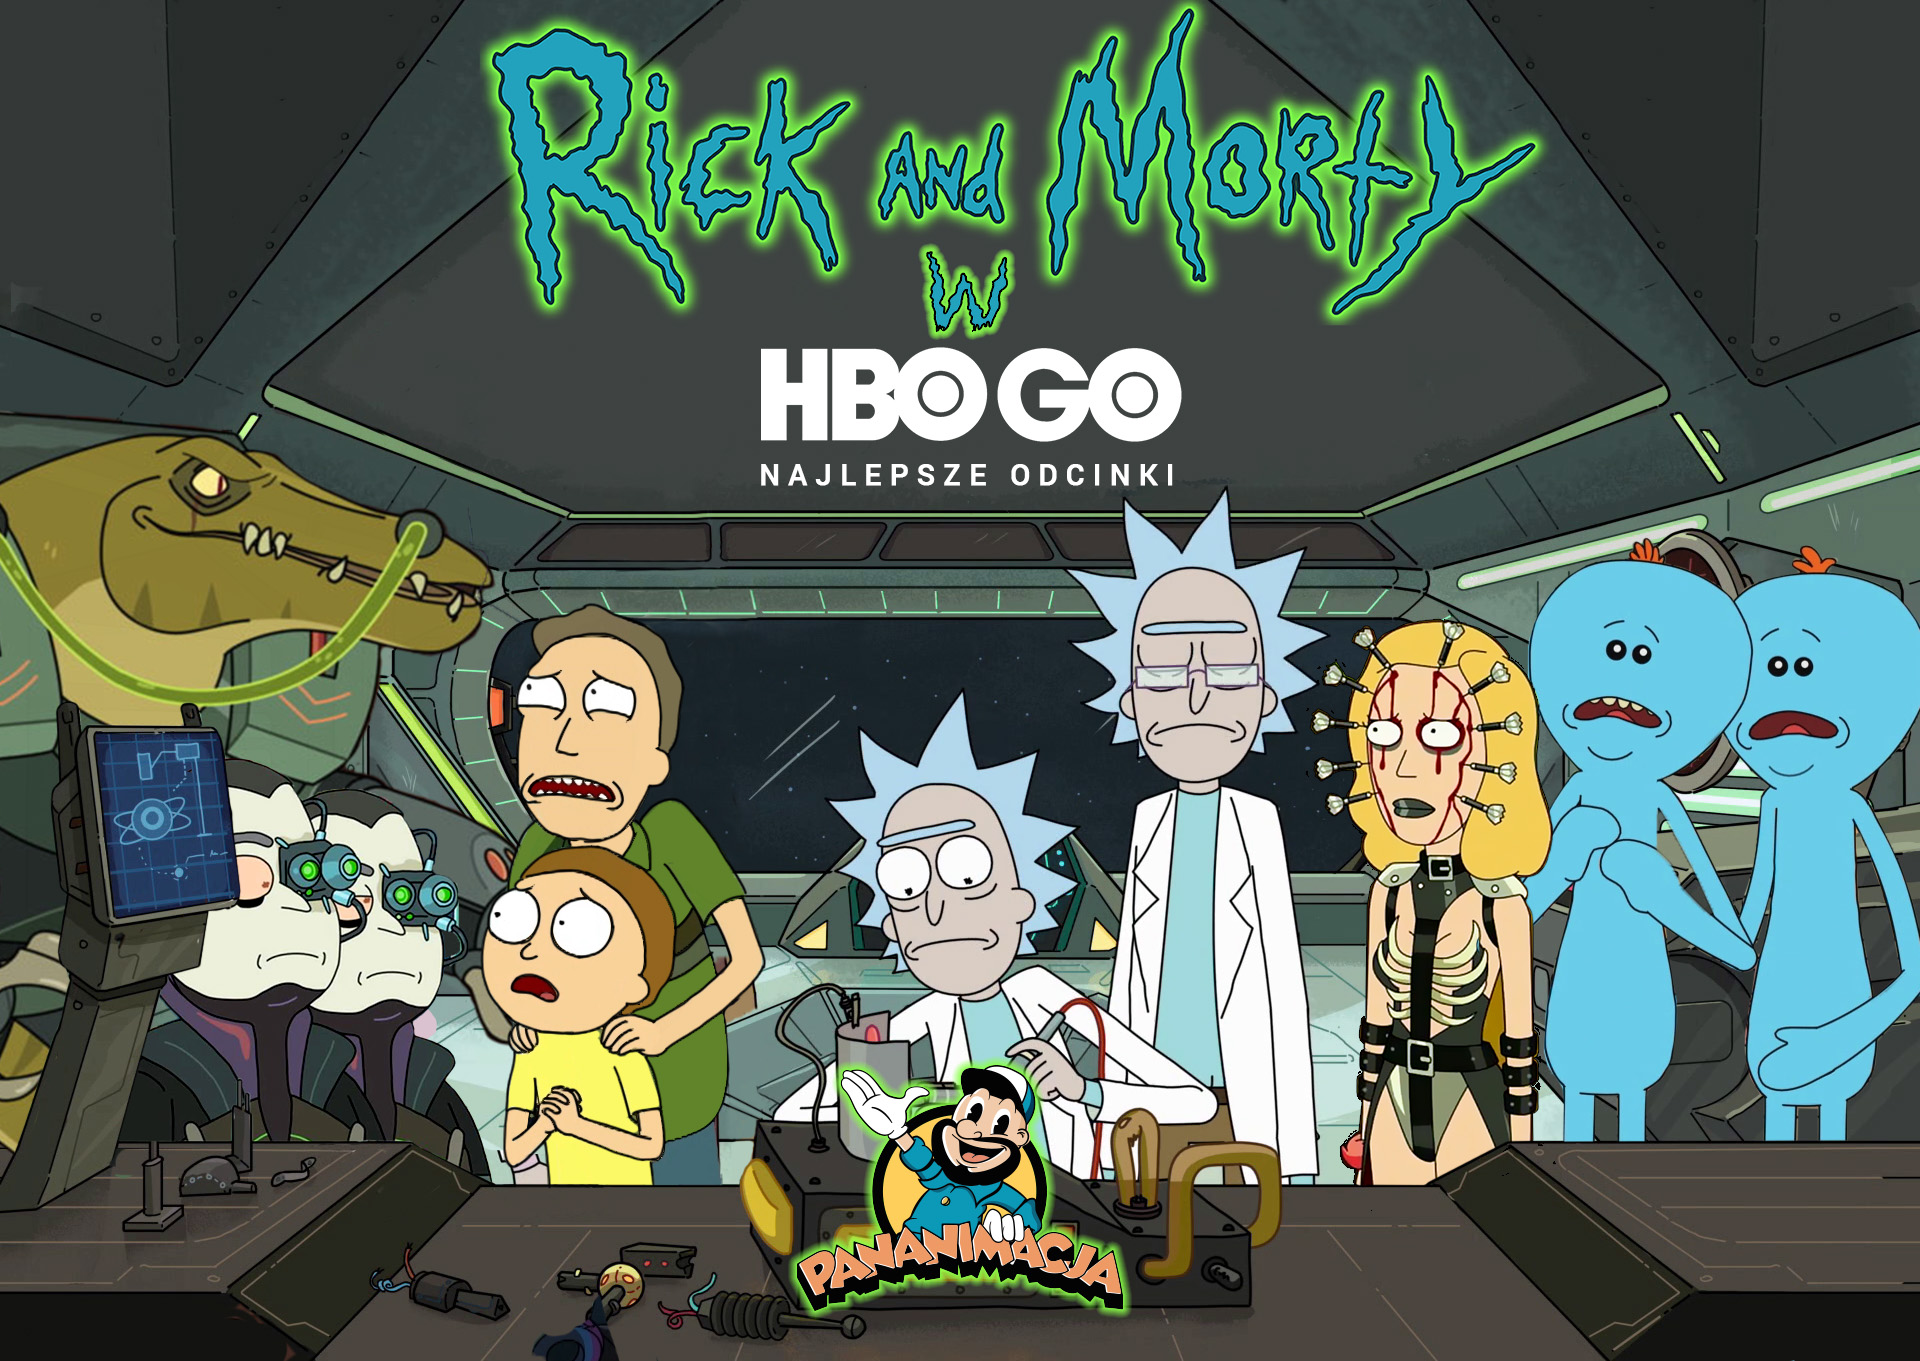 Rick i Morty” – kosmiczne podróże, cyberpunk, horror fantastyka